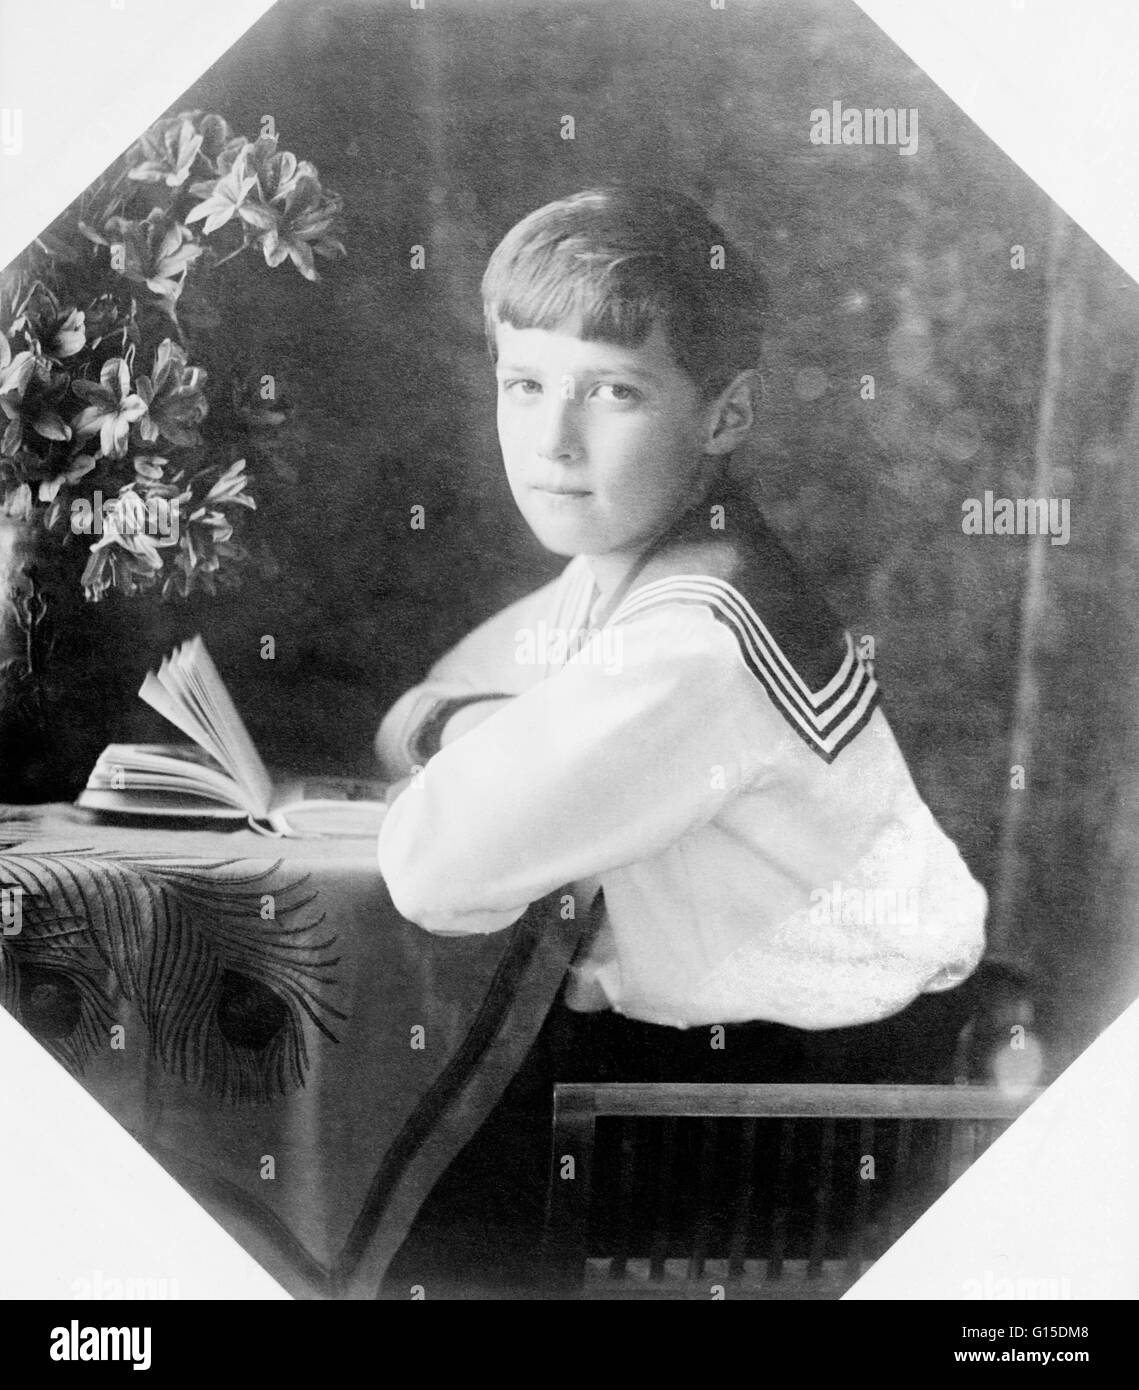 Alexei, circa 1910 - 1915. Alexei Romanov (12 agosto 1904 - 17 luglio 1918), il giovane erede, fu afflitto con emofilia B, una malattia ereditaria che impedisce al sangue di coagulazione correttamente, che a quel tempo era incurabile e di solito portato ad un untimel Foto Stock